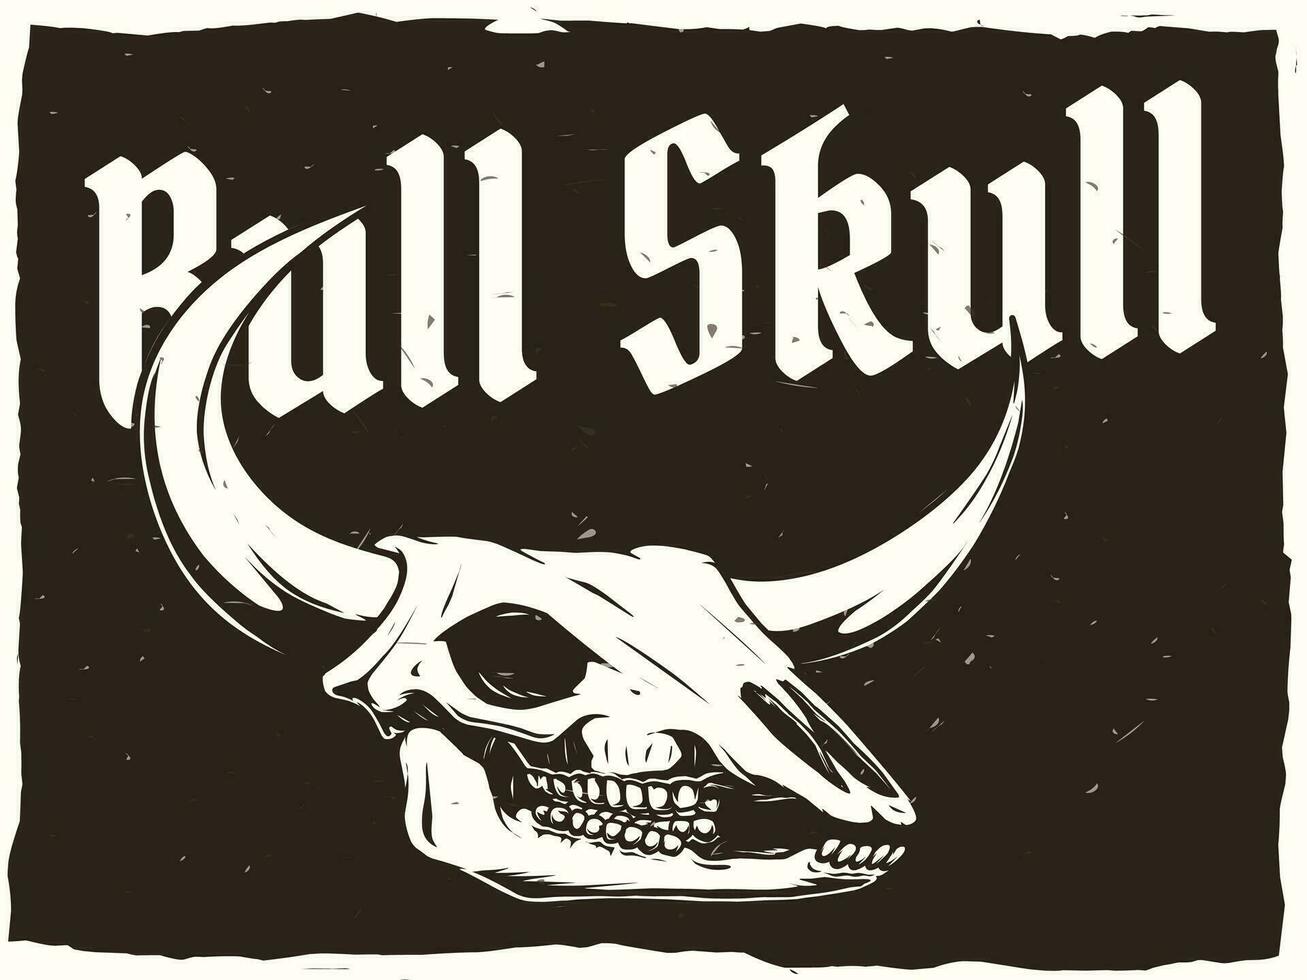 Bull skull poster design for print vector